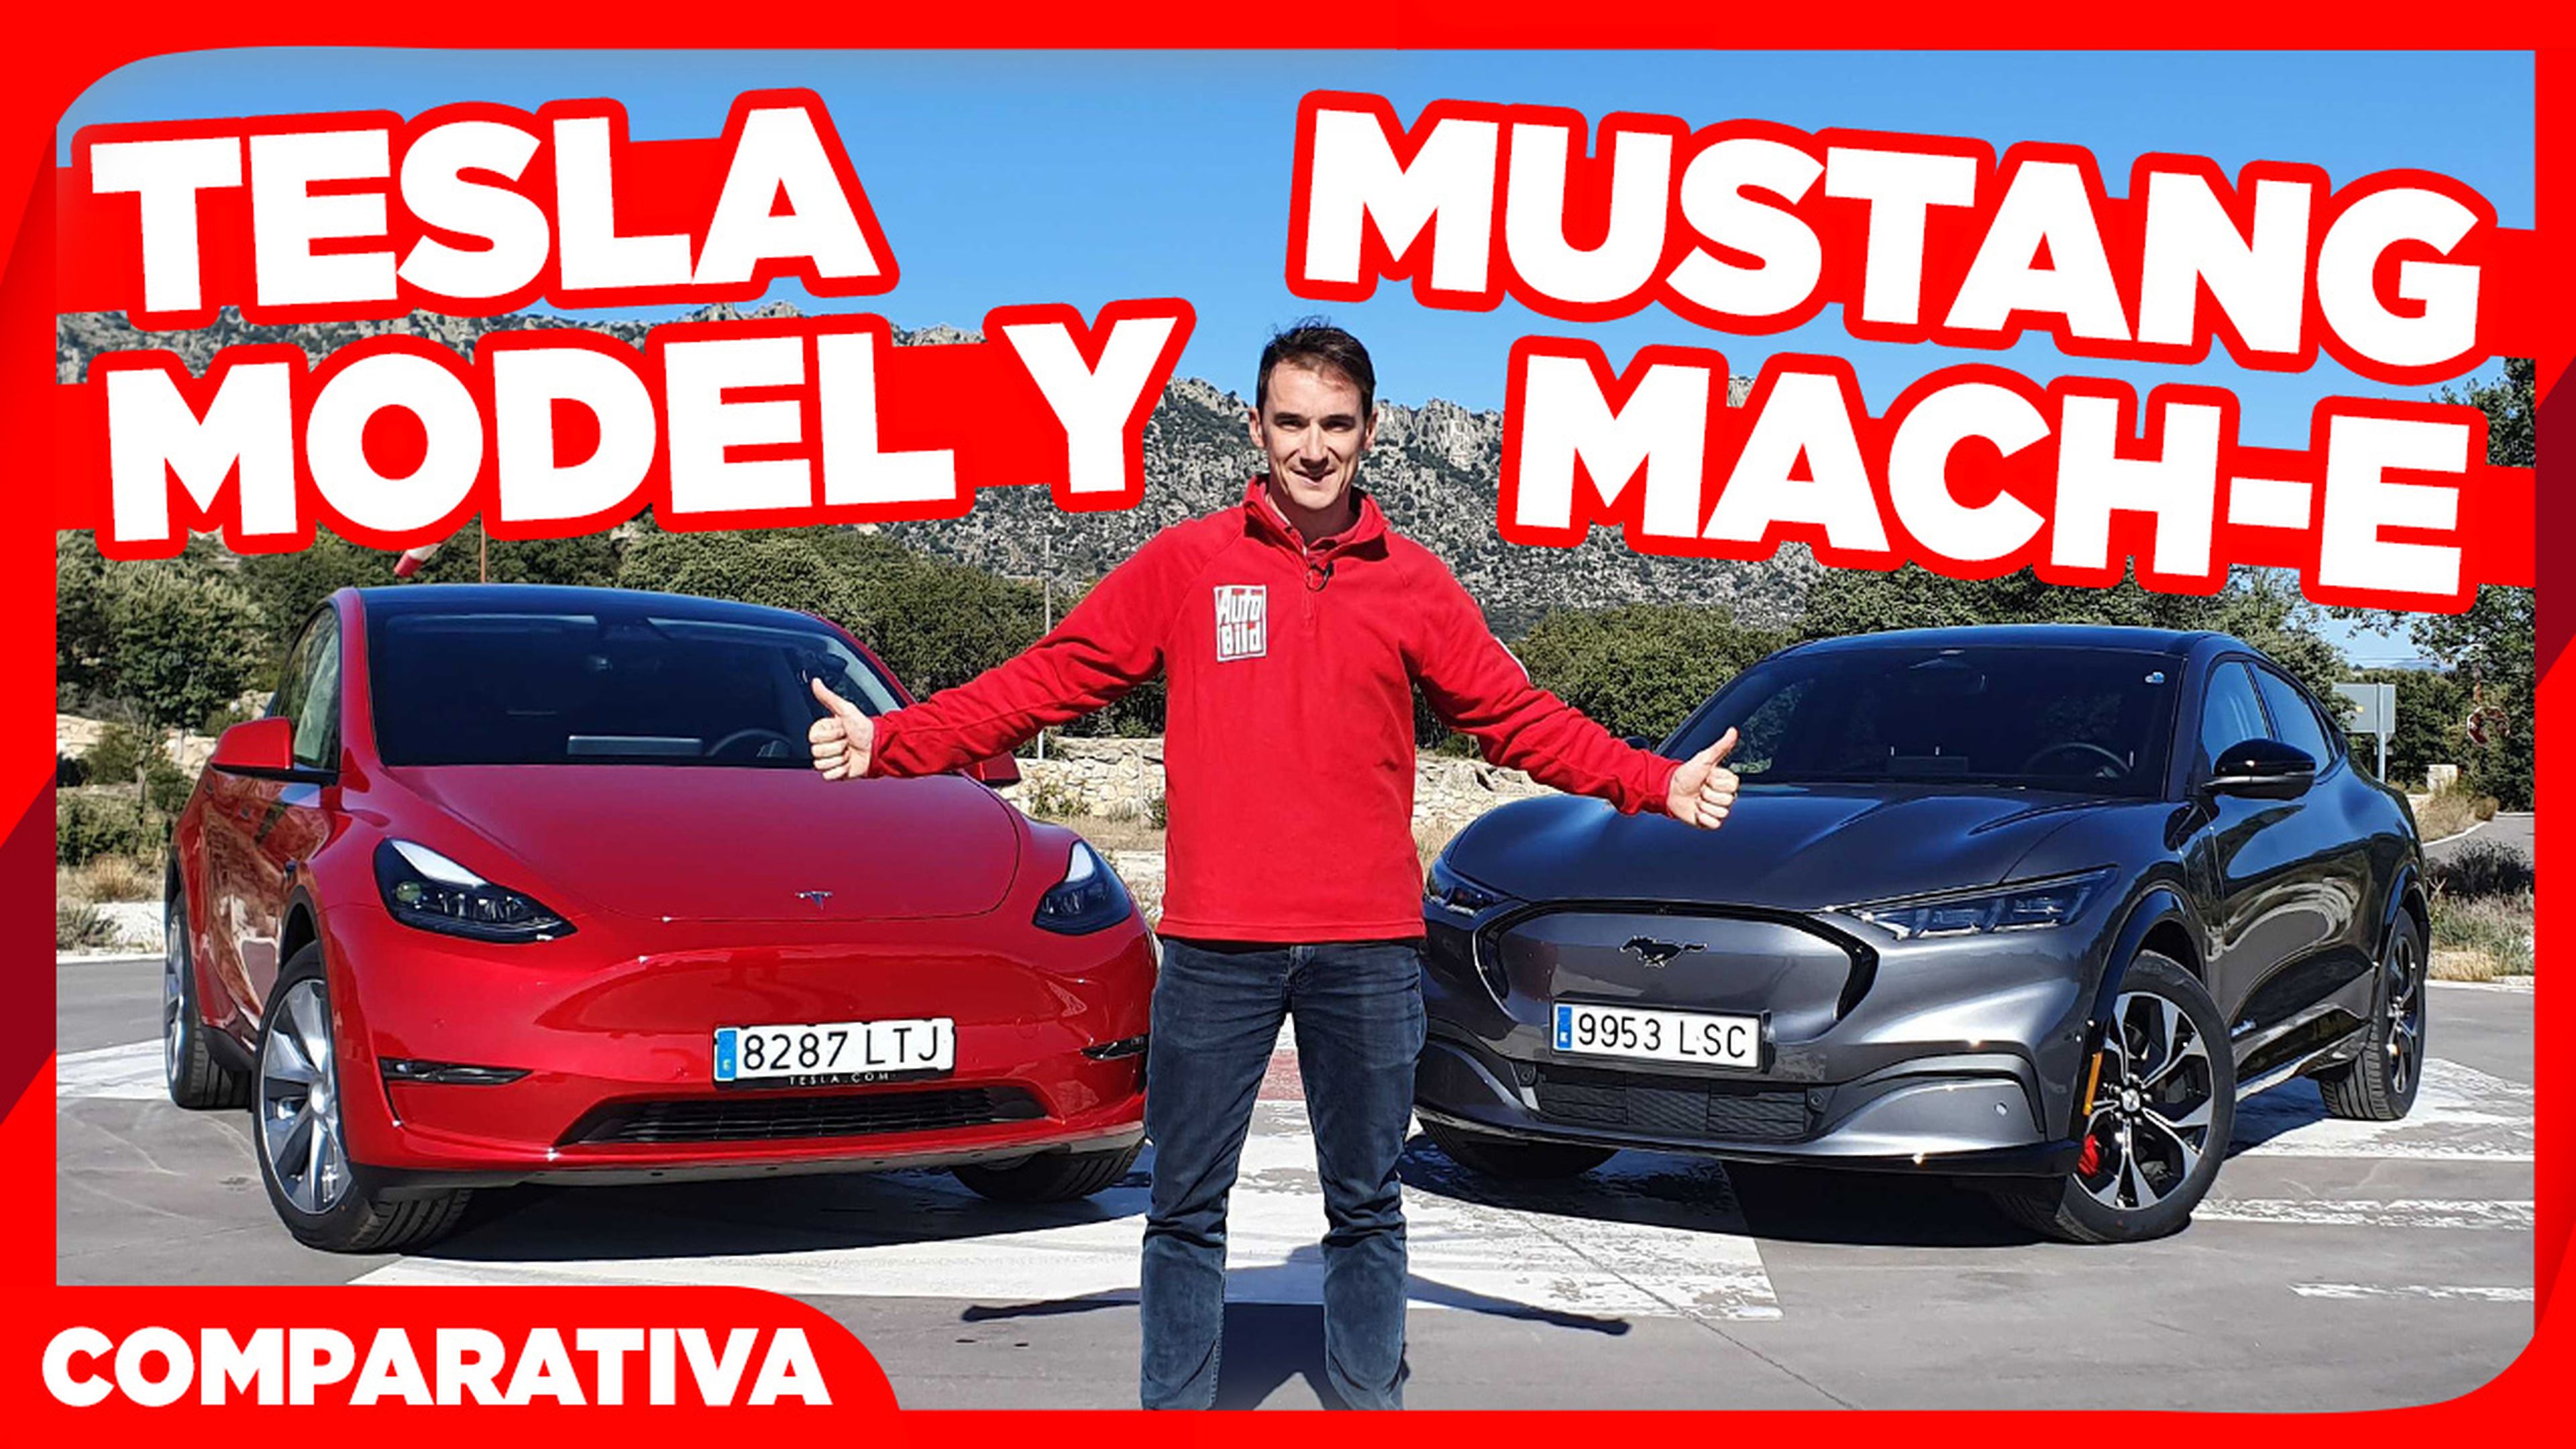 VÍDEO: Tesla Model Y vs Mustang Mach-E